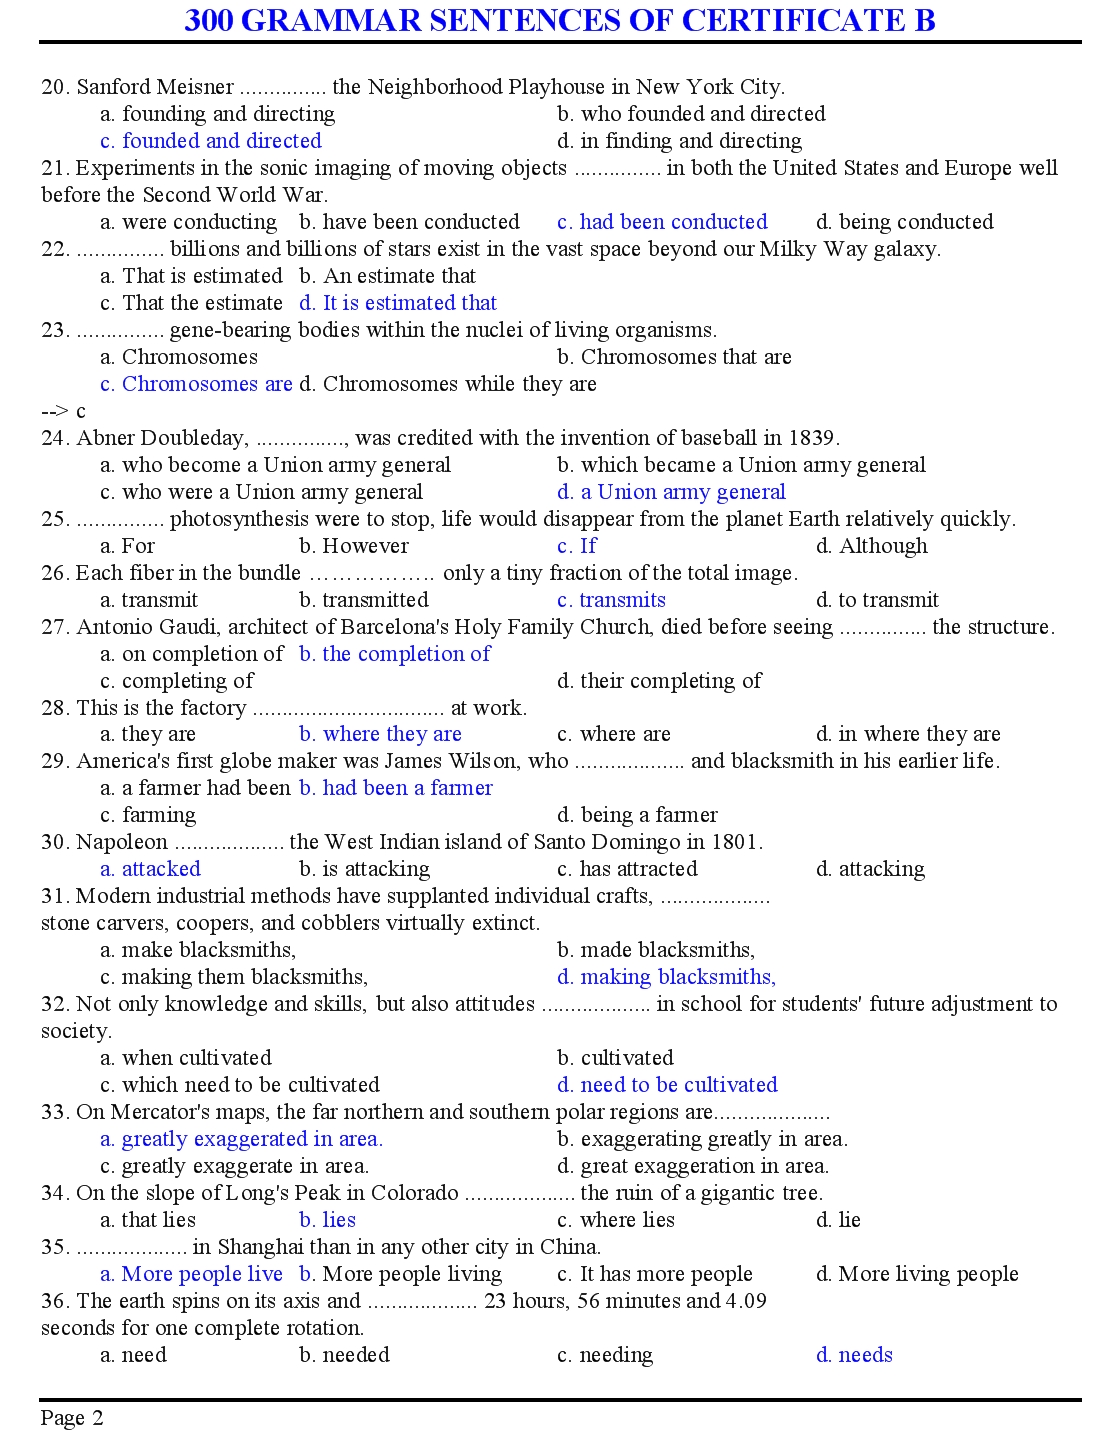 300 grammar sentences of certificate b trang 2